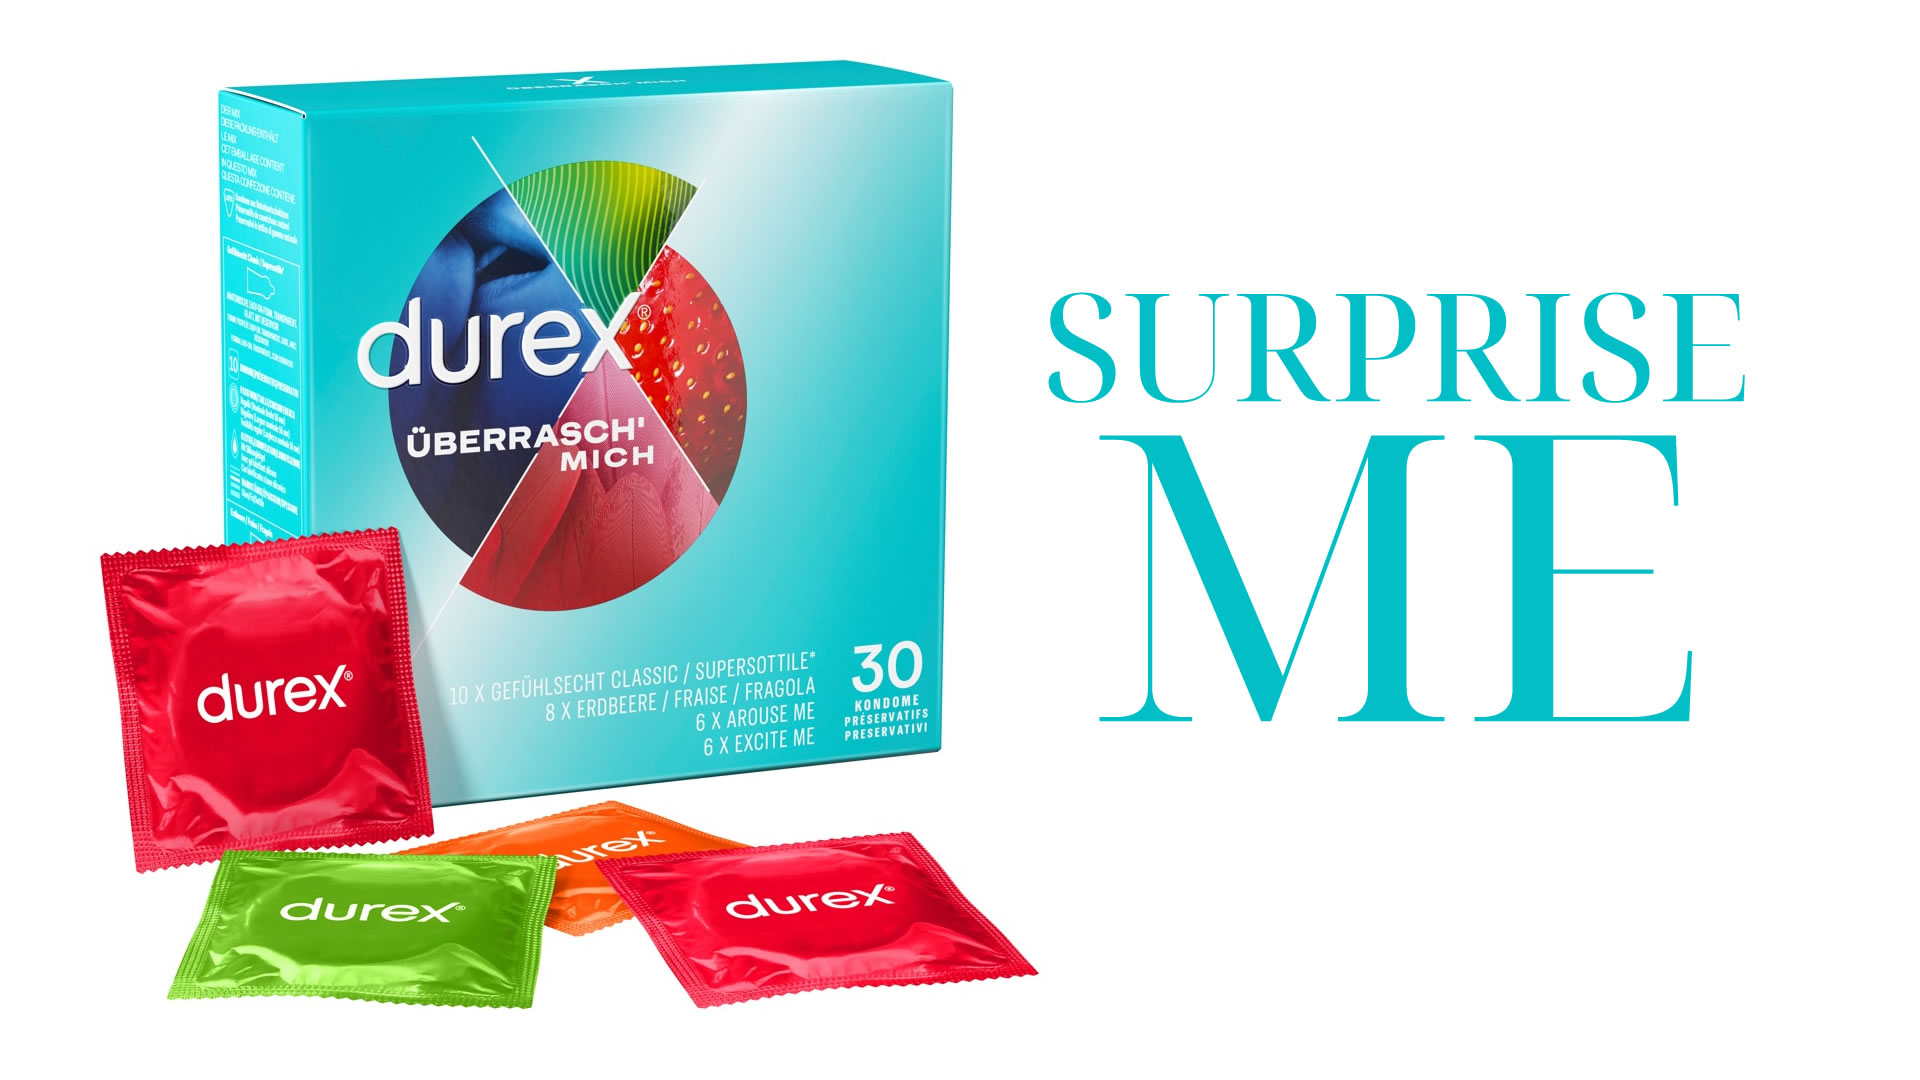 Durex berrasch Mich Kondom mit 4 verschiedenen Sorten